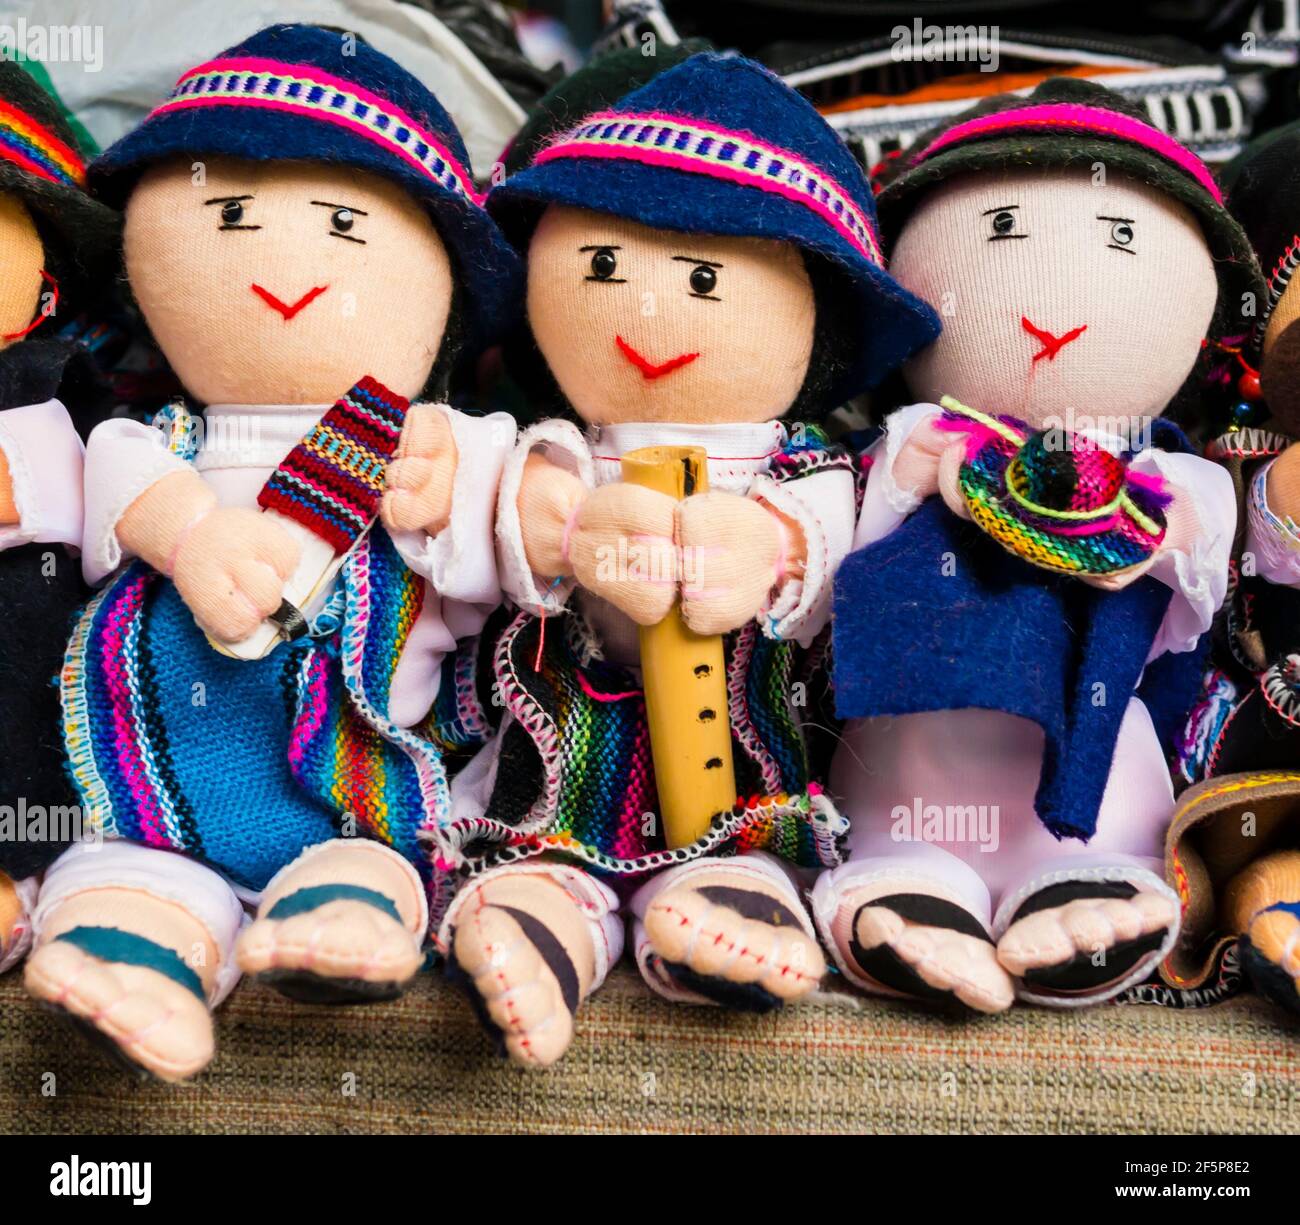 Détail de poupées de chiffon masculin dans des vêtements traditionnels jouant des instruments de musique, marché Otavalo, Équateur Banque D'Images